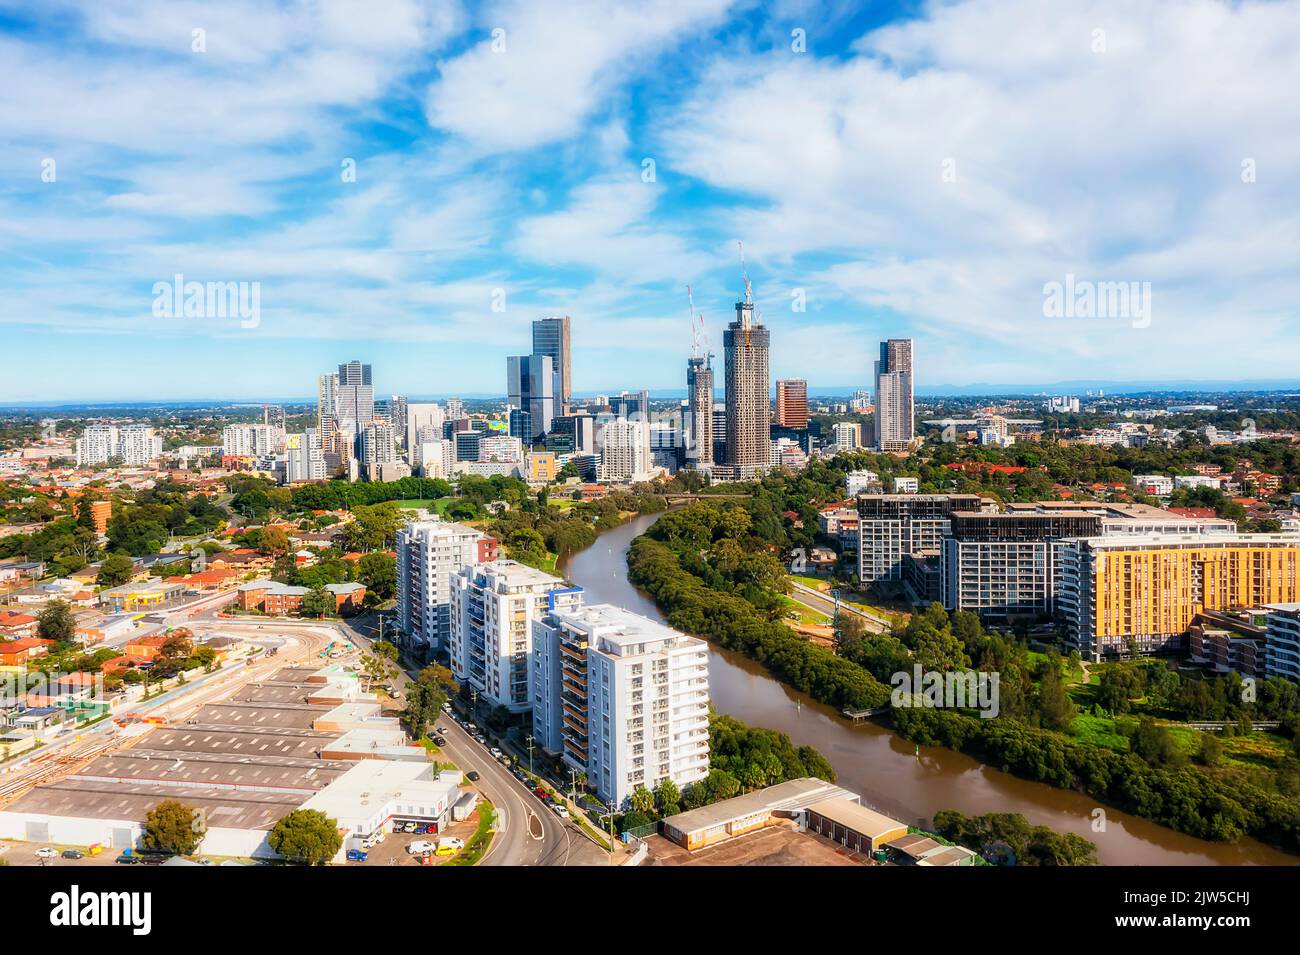 Parramatta City CBD am Parramatta River im Westen Sydneys von NSW, Australien - Luftbild der Stadt. Stockfoto